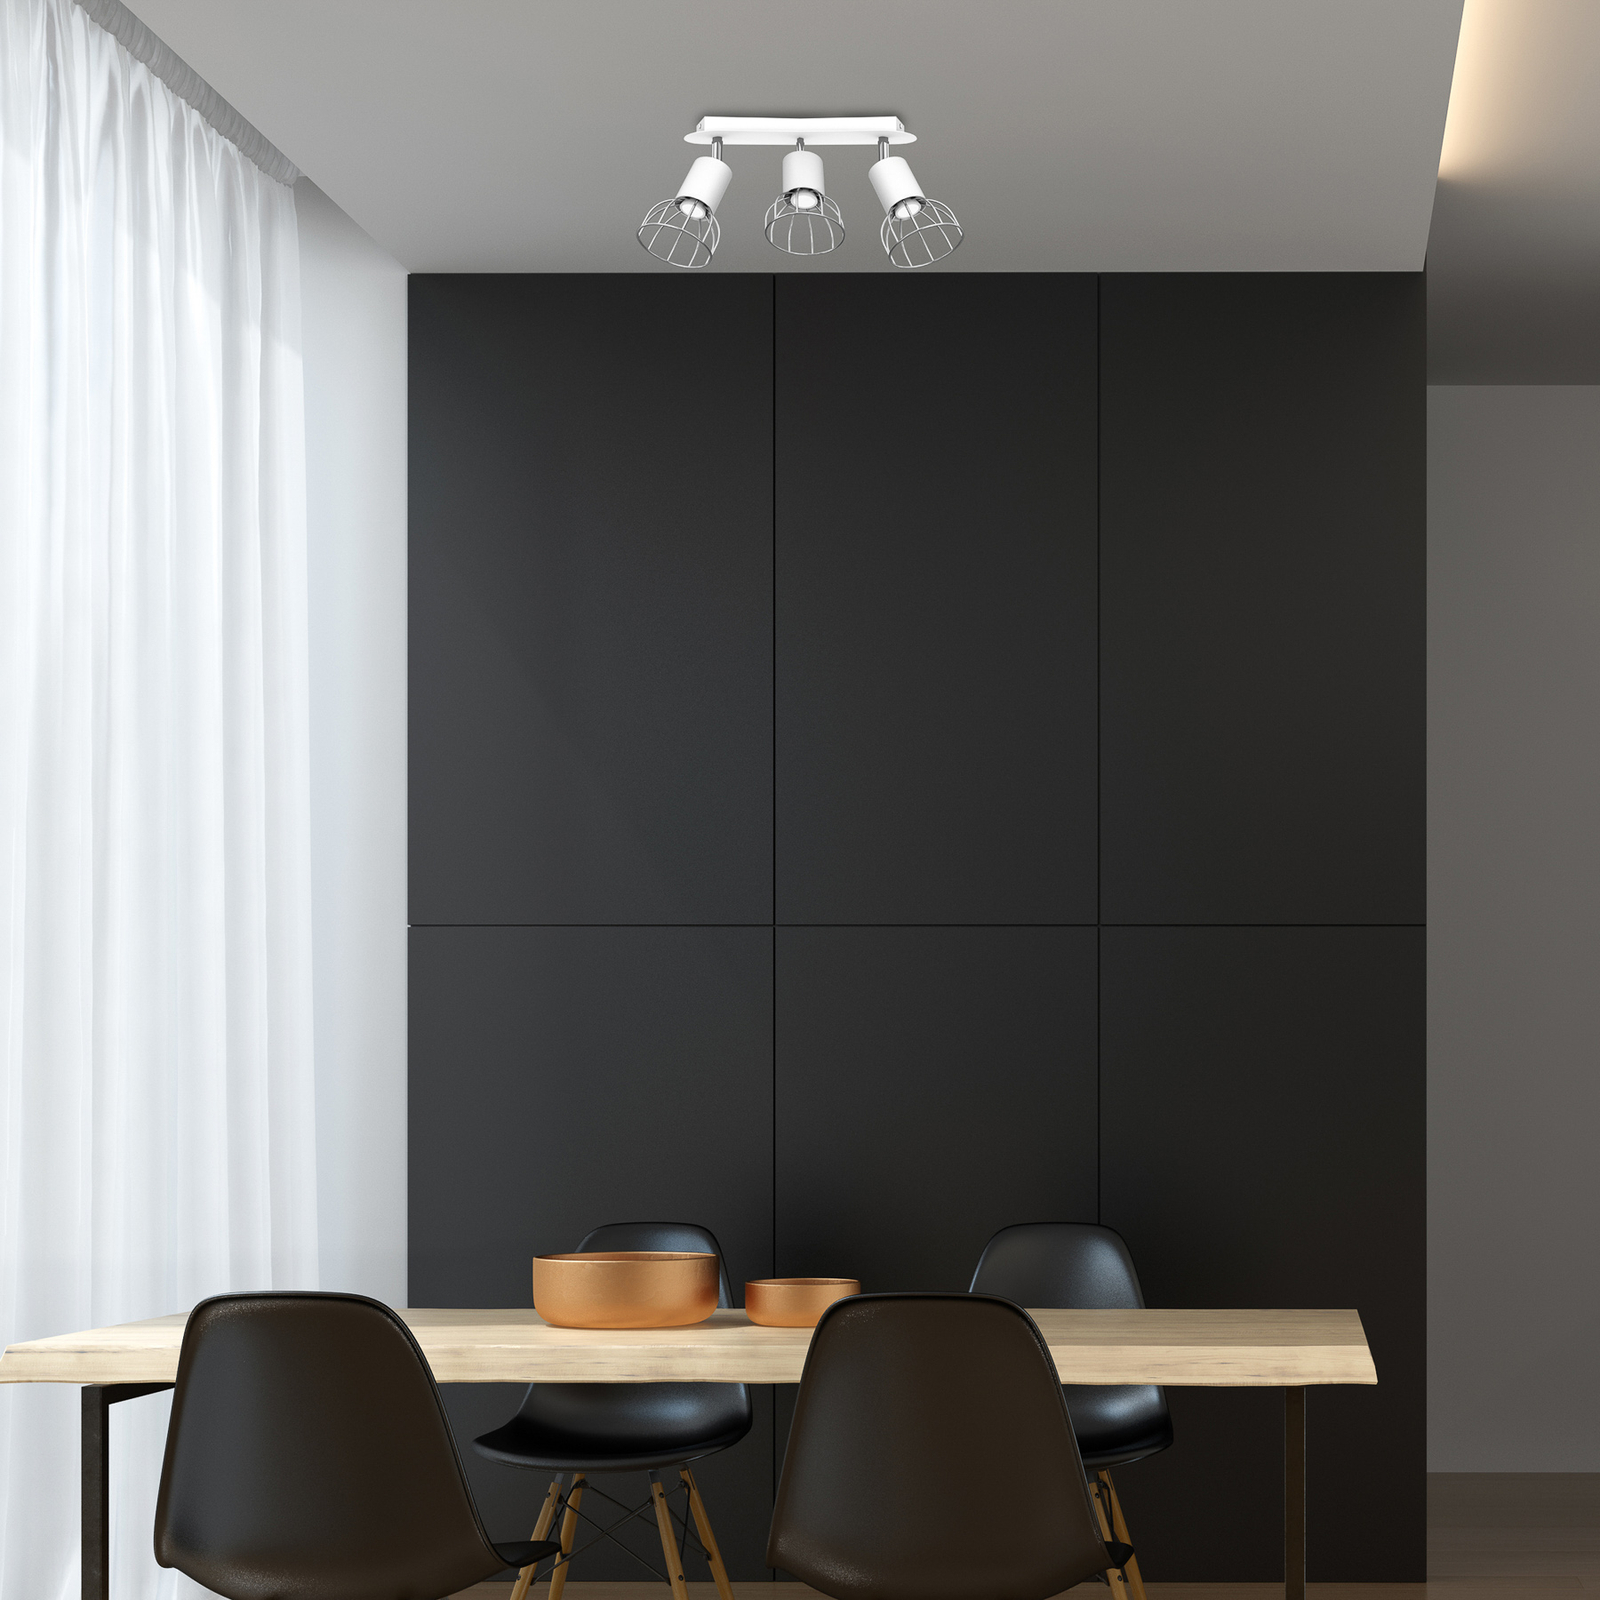 Danjel spot pour plafond à 3 lampes, blanc/argenté